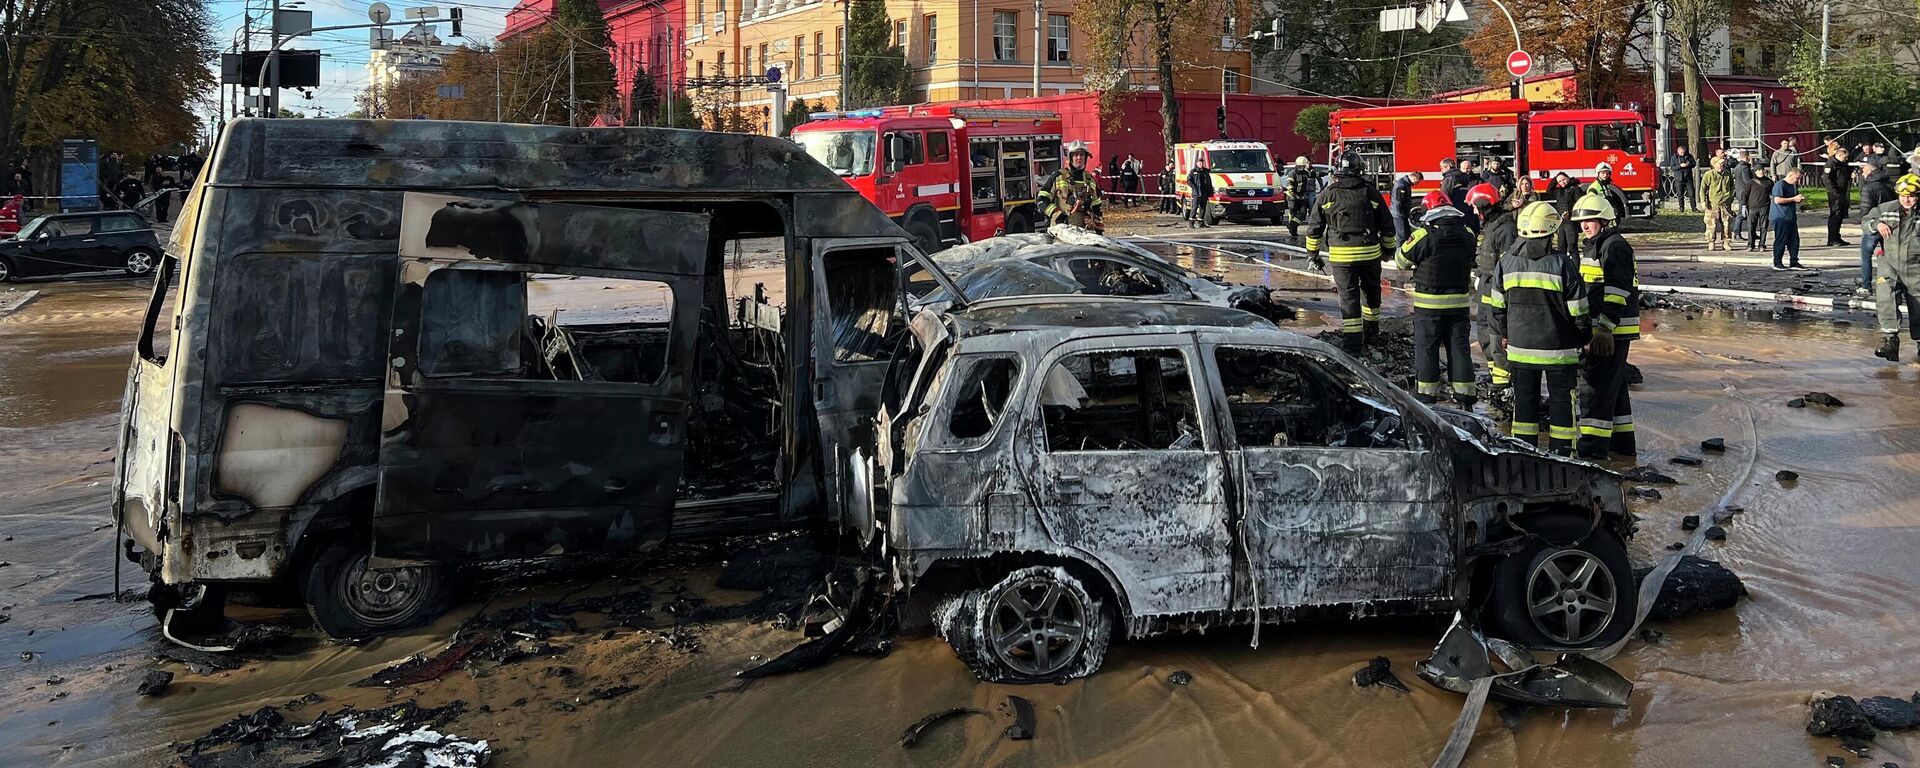 Пожарные на месте взрыва в Киеве, Украина. 10 октября 2022 года - Sputnik Кыргызстан, 1920, 10.10.2022